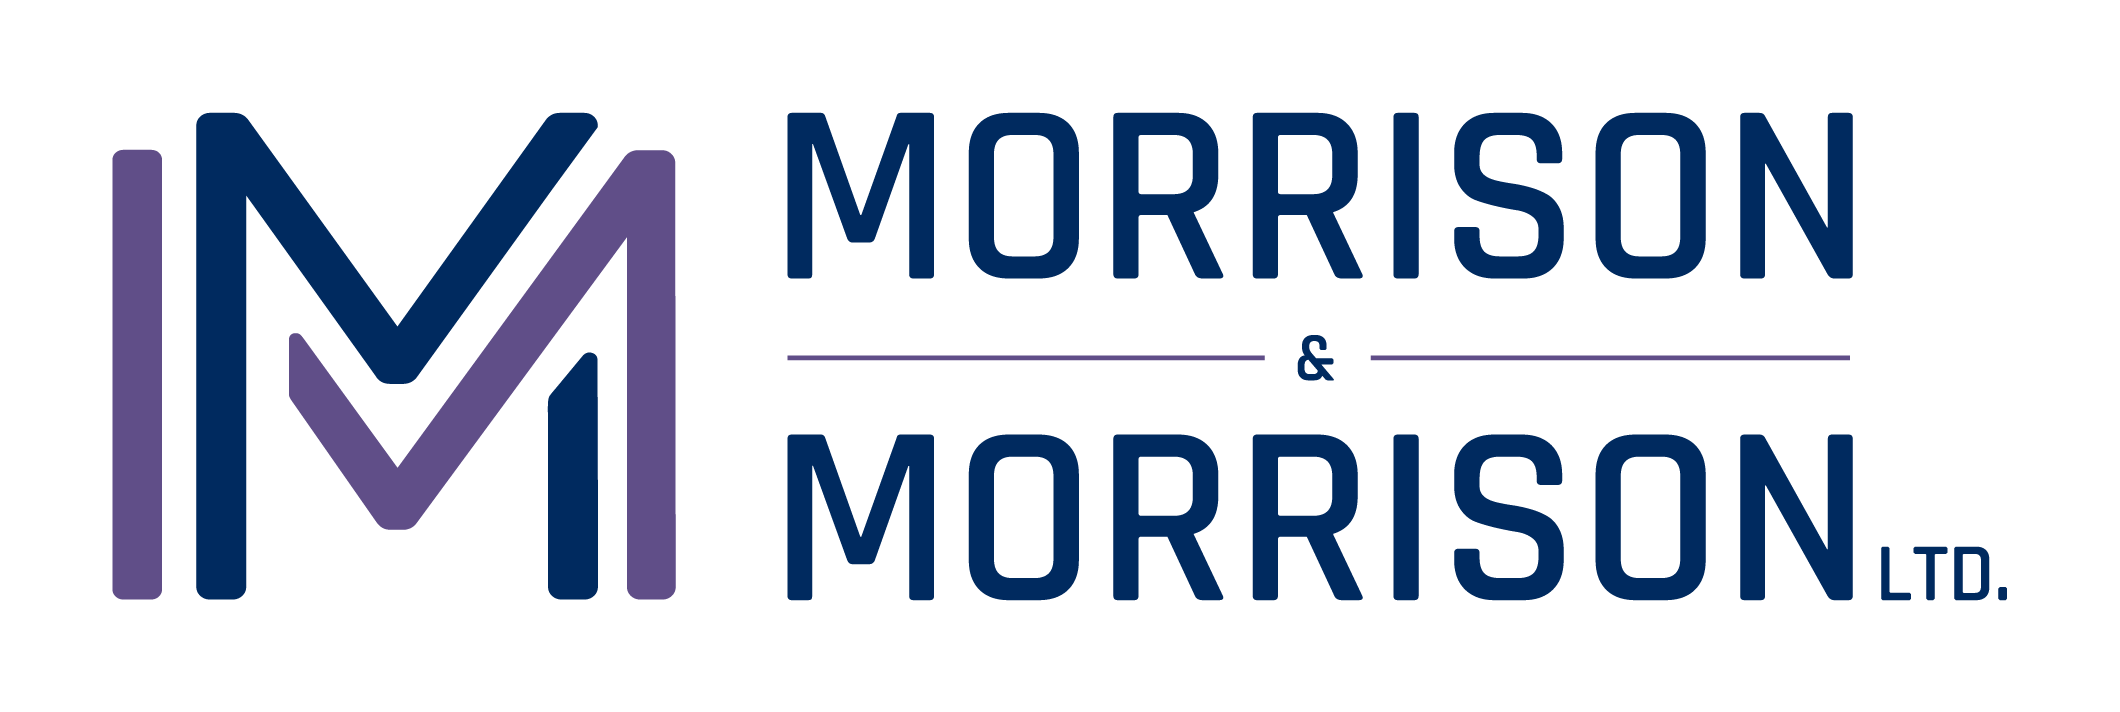 Morrison & Morrison logo